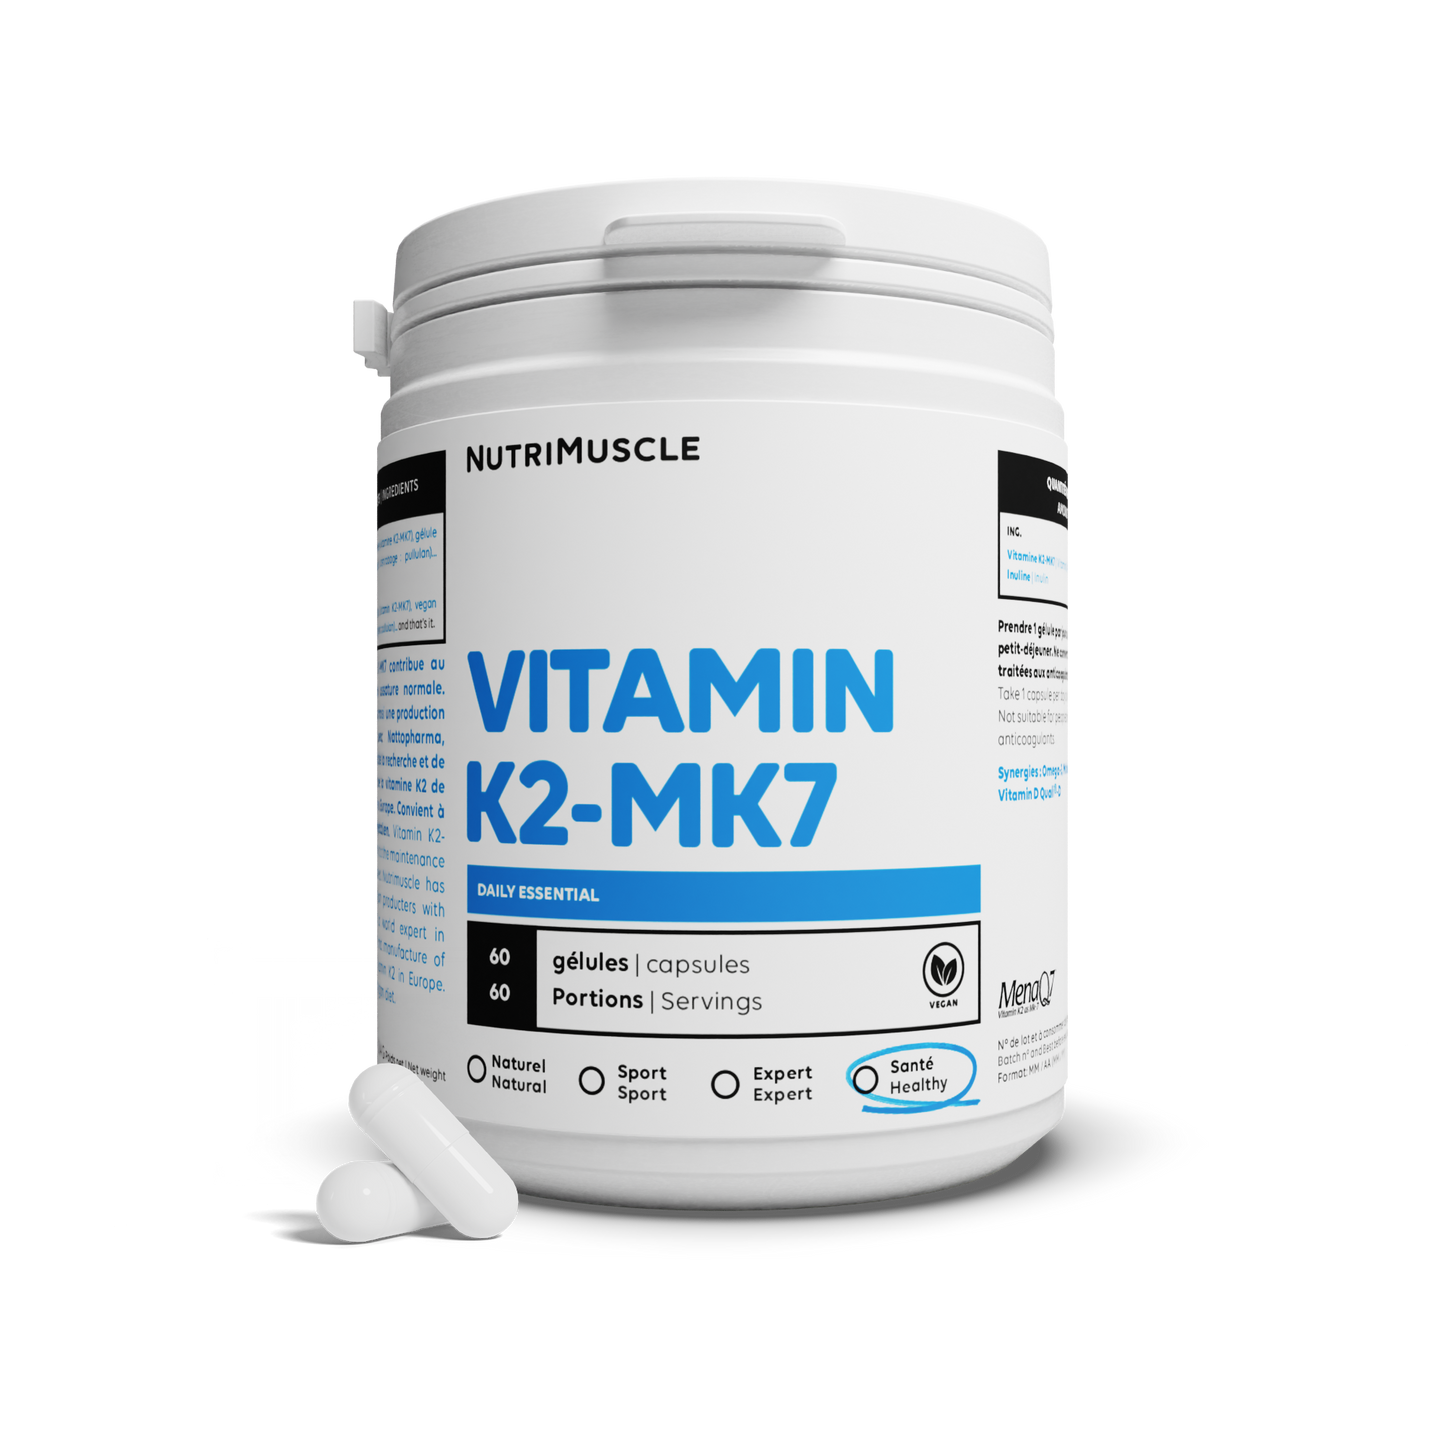 Vitamin K2-MK7